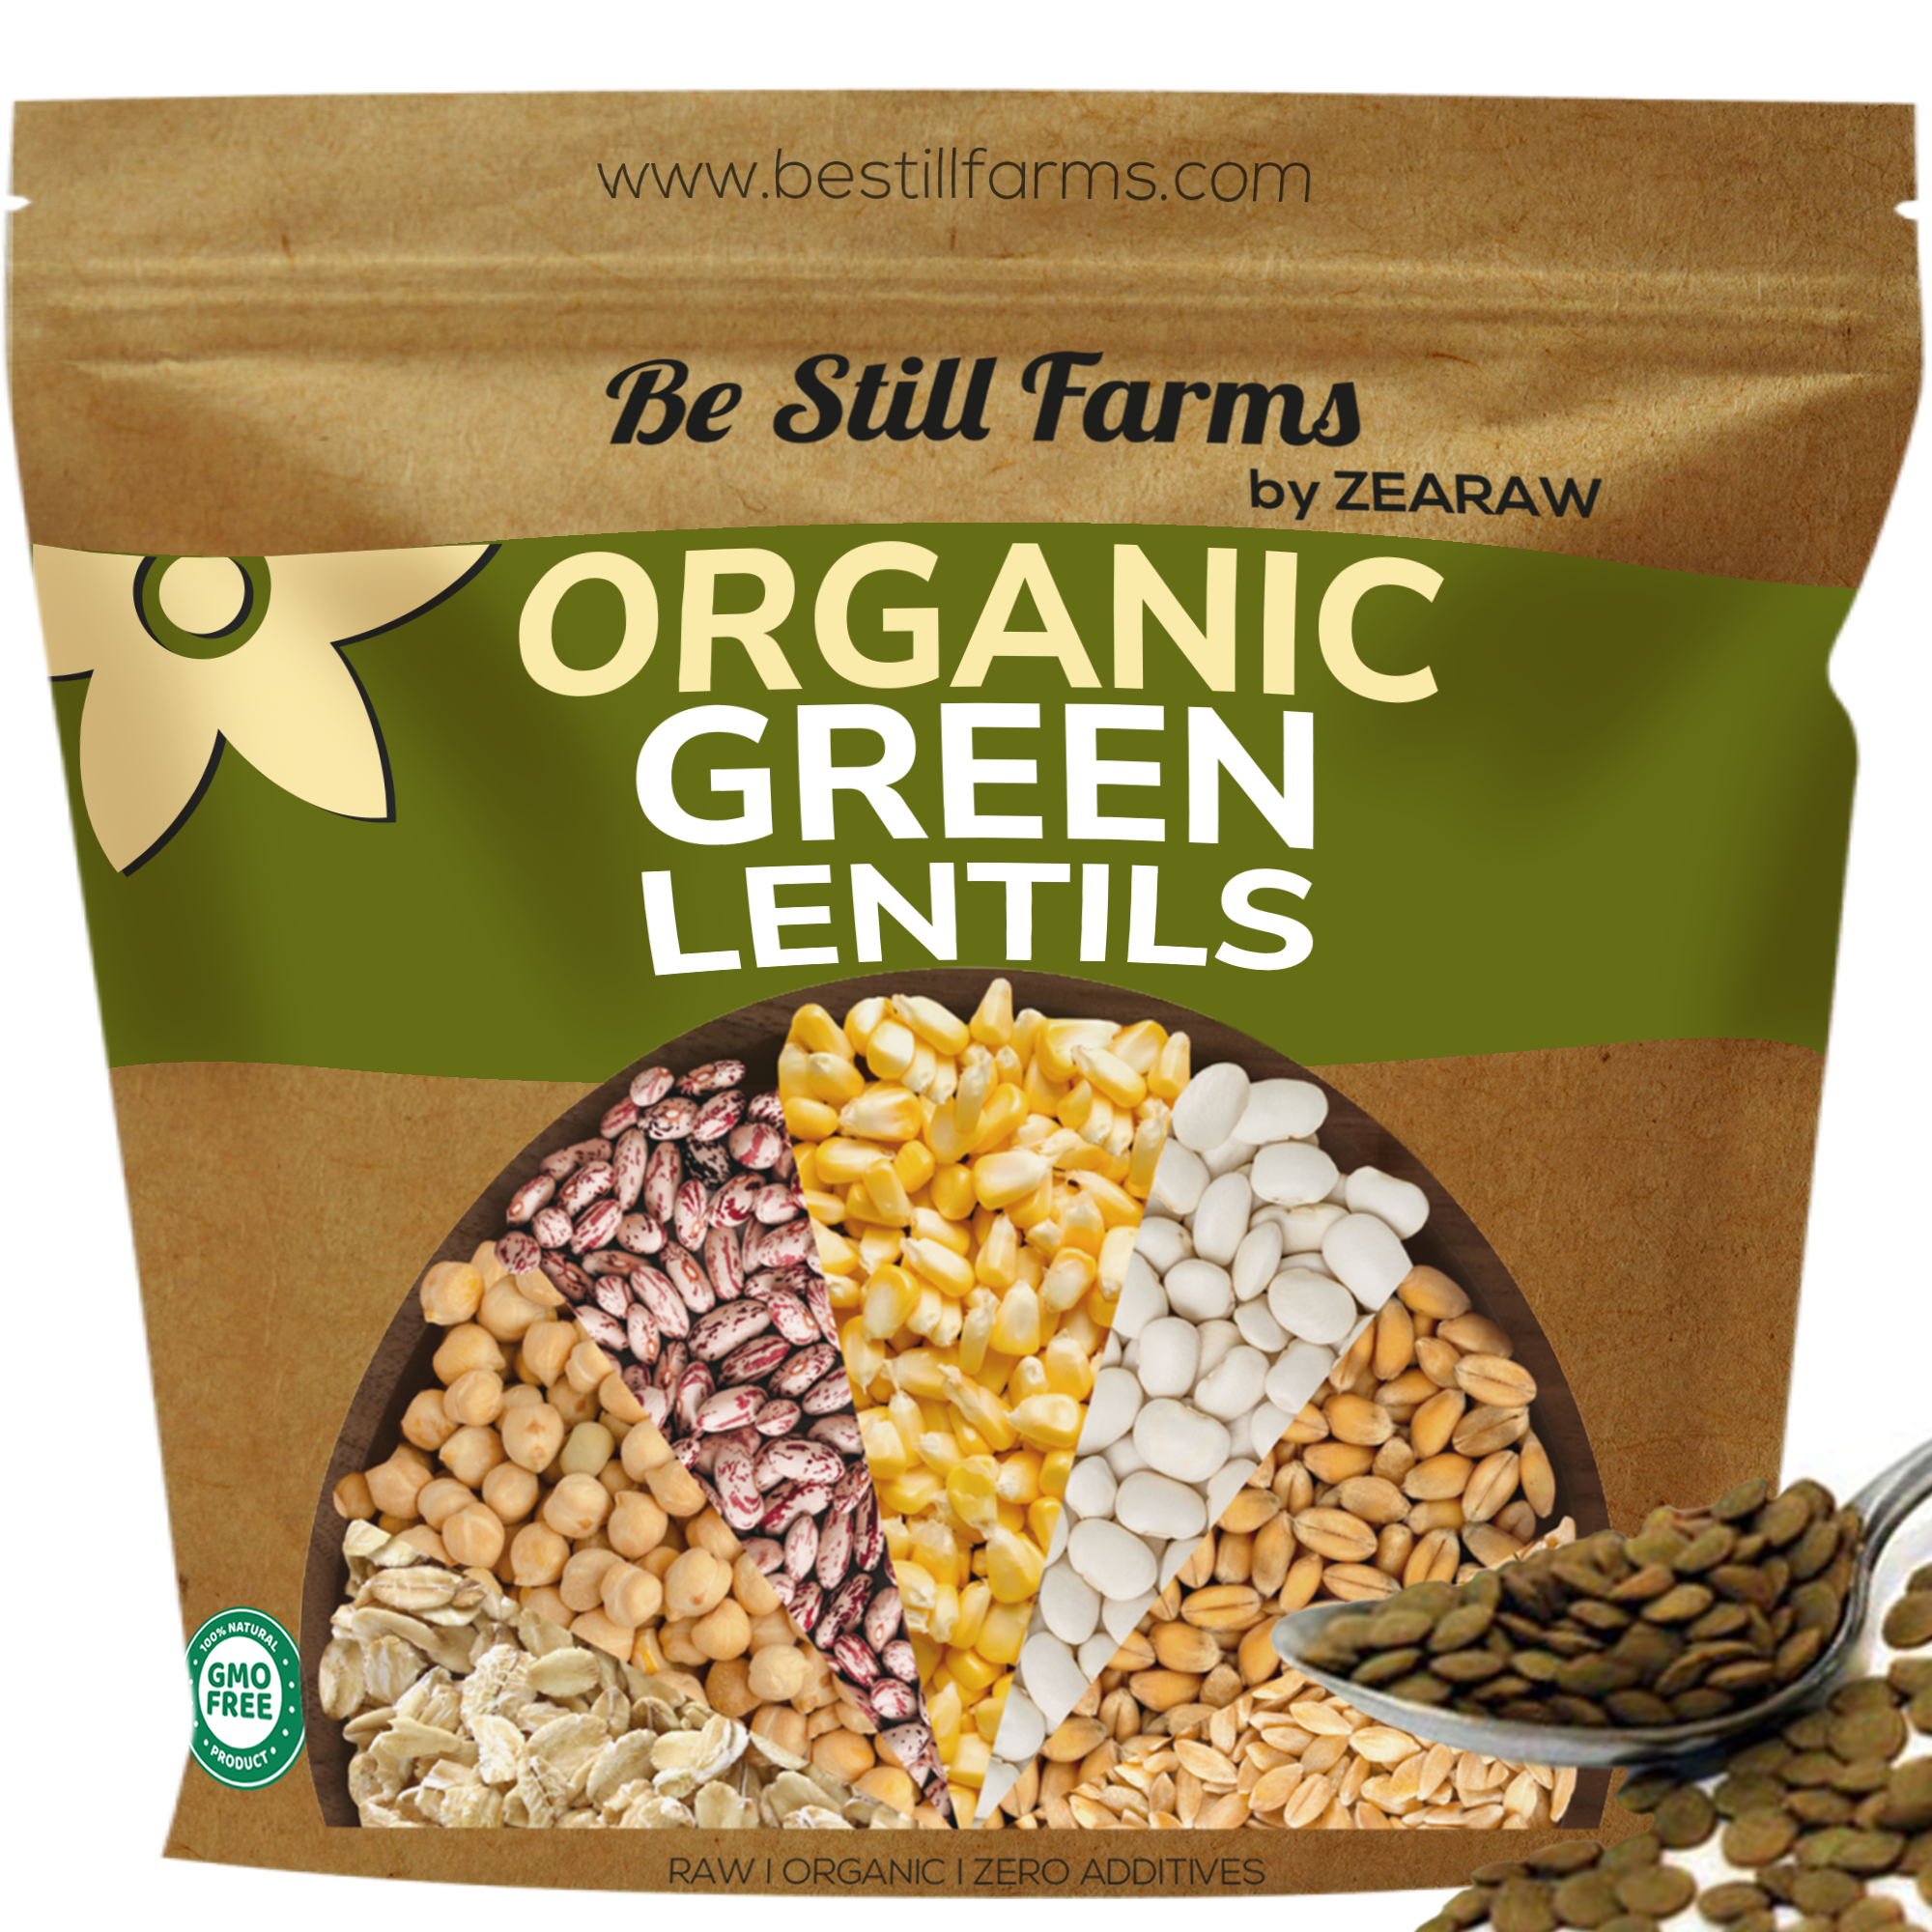 Green Lentils - Be Still Farms